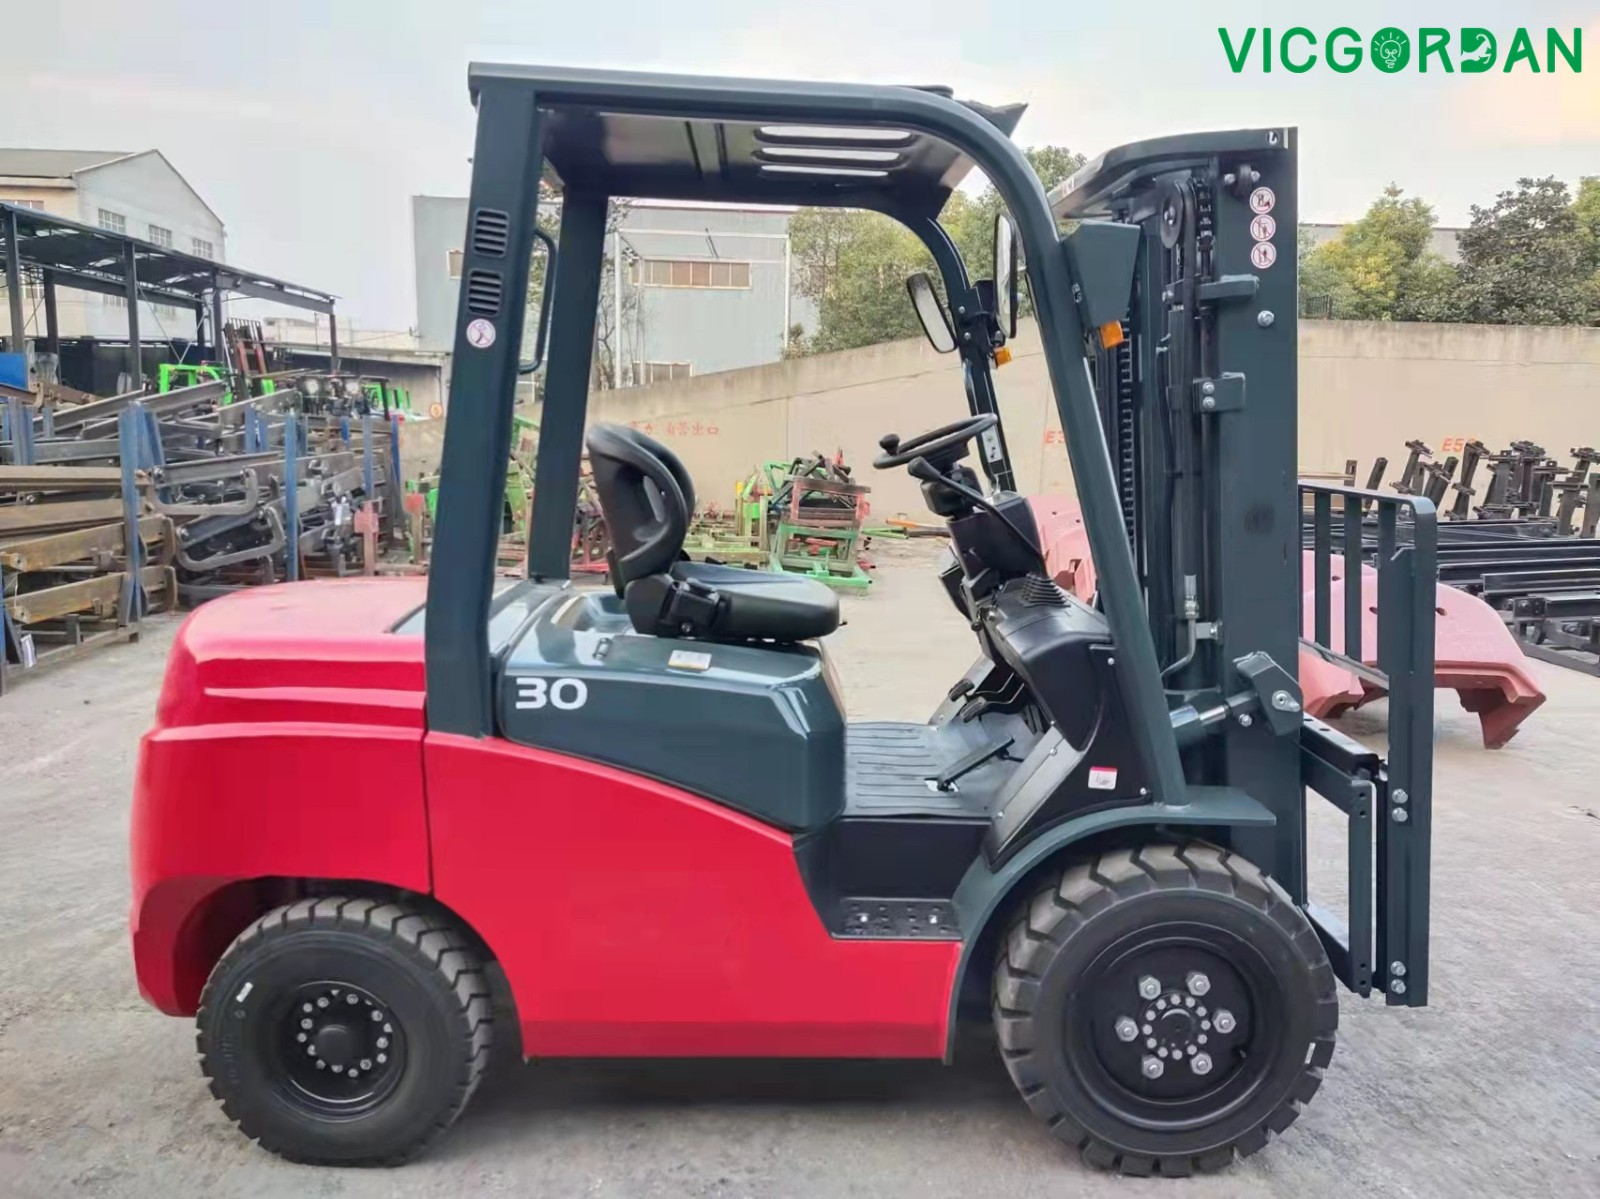 Vicgordan 3 ton forklift is ready to ship to Egypt